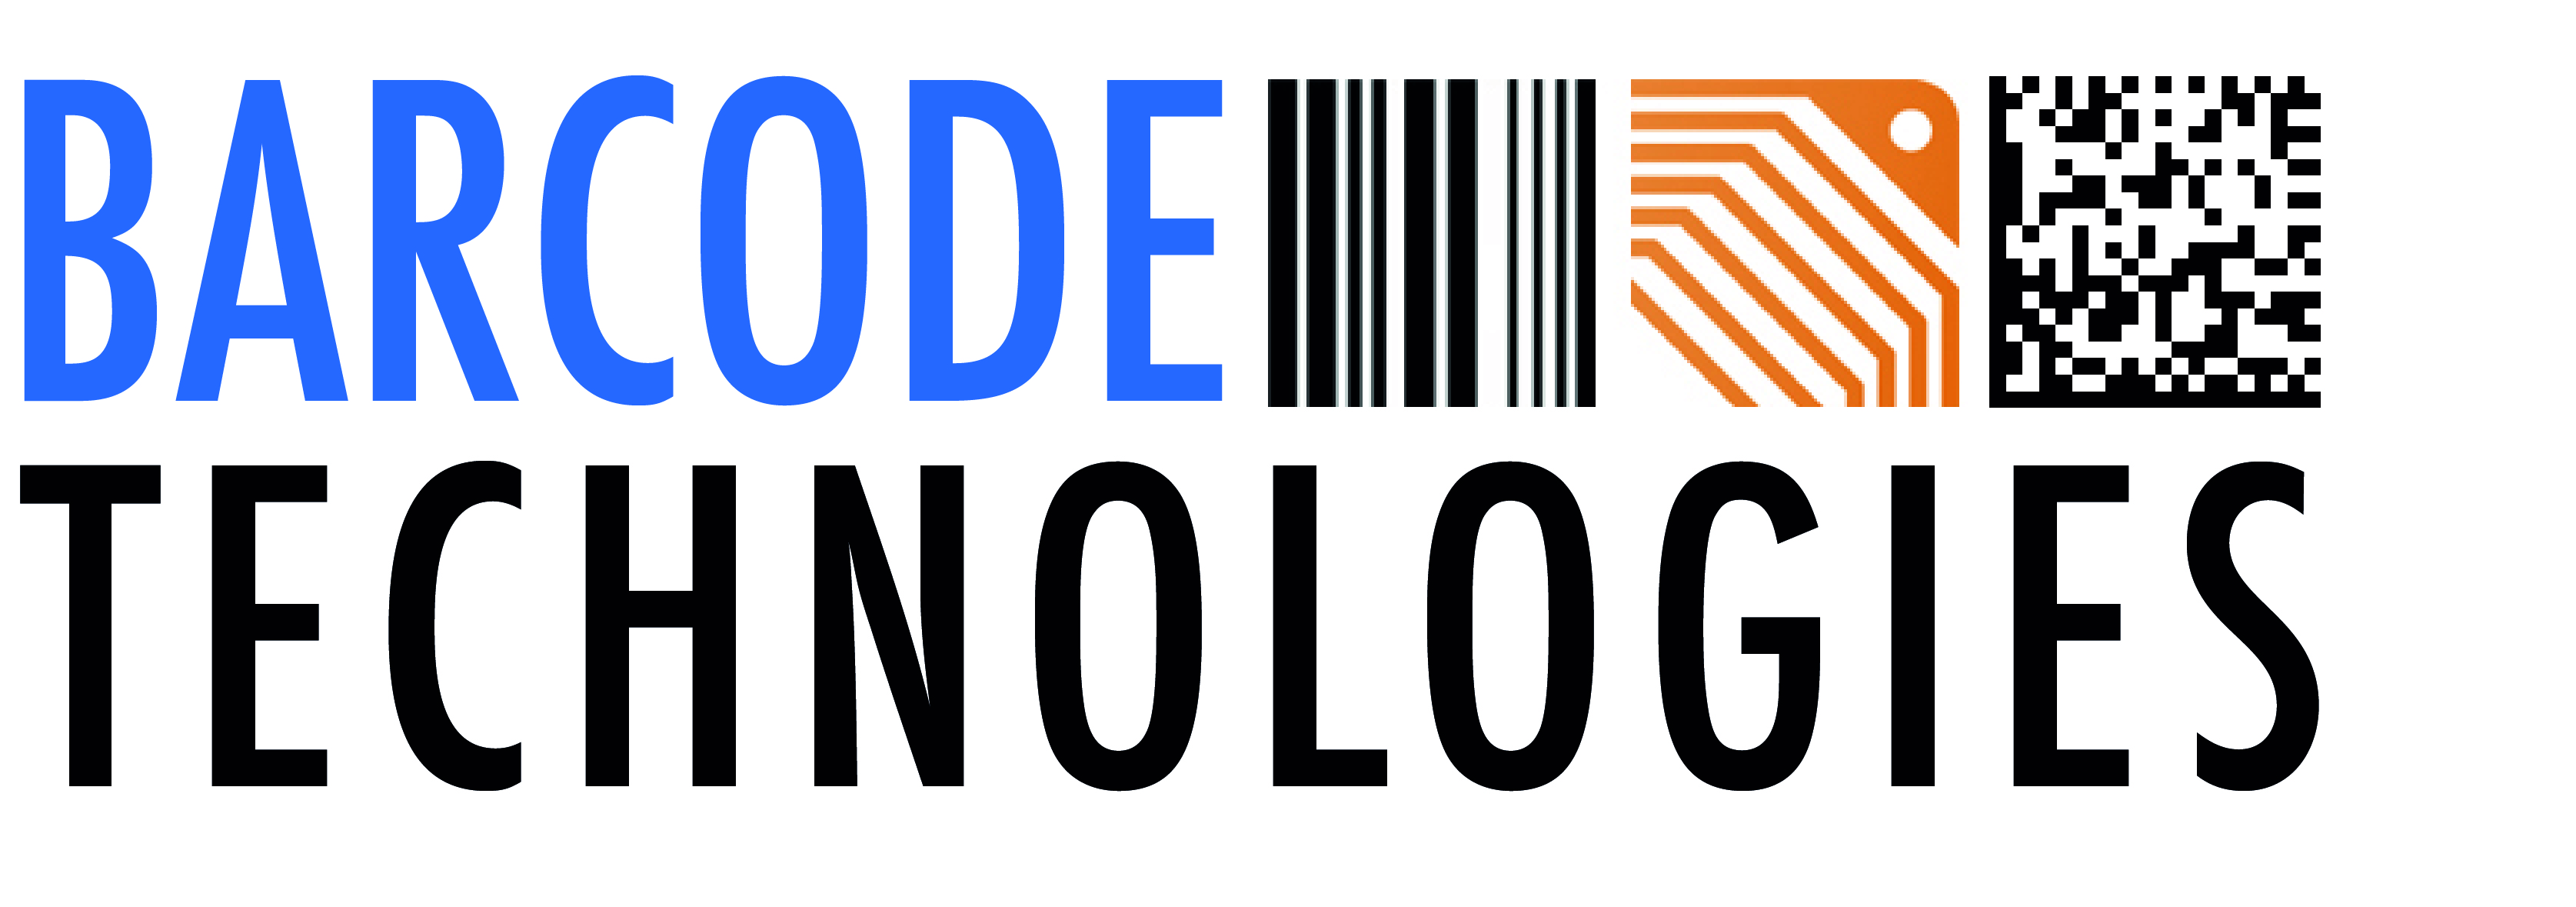 Barcode Technologies Ltd.